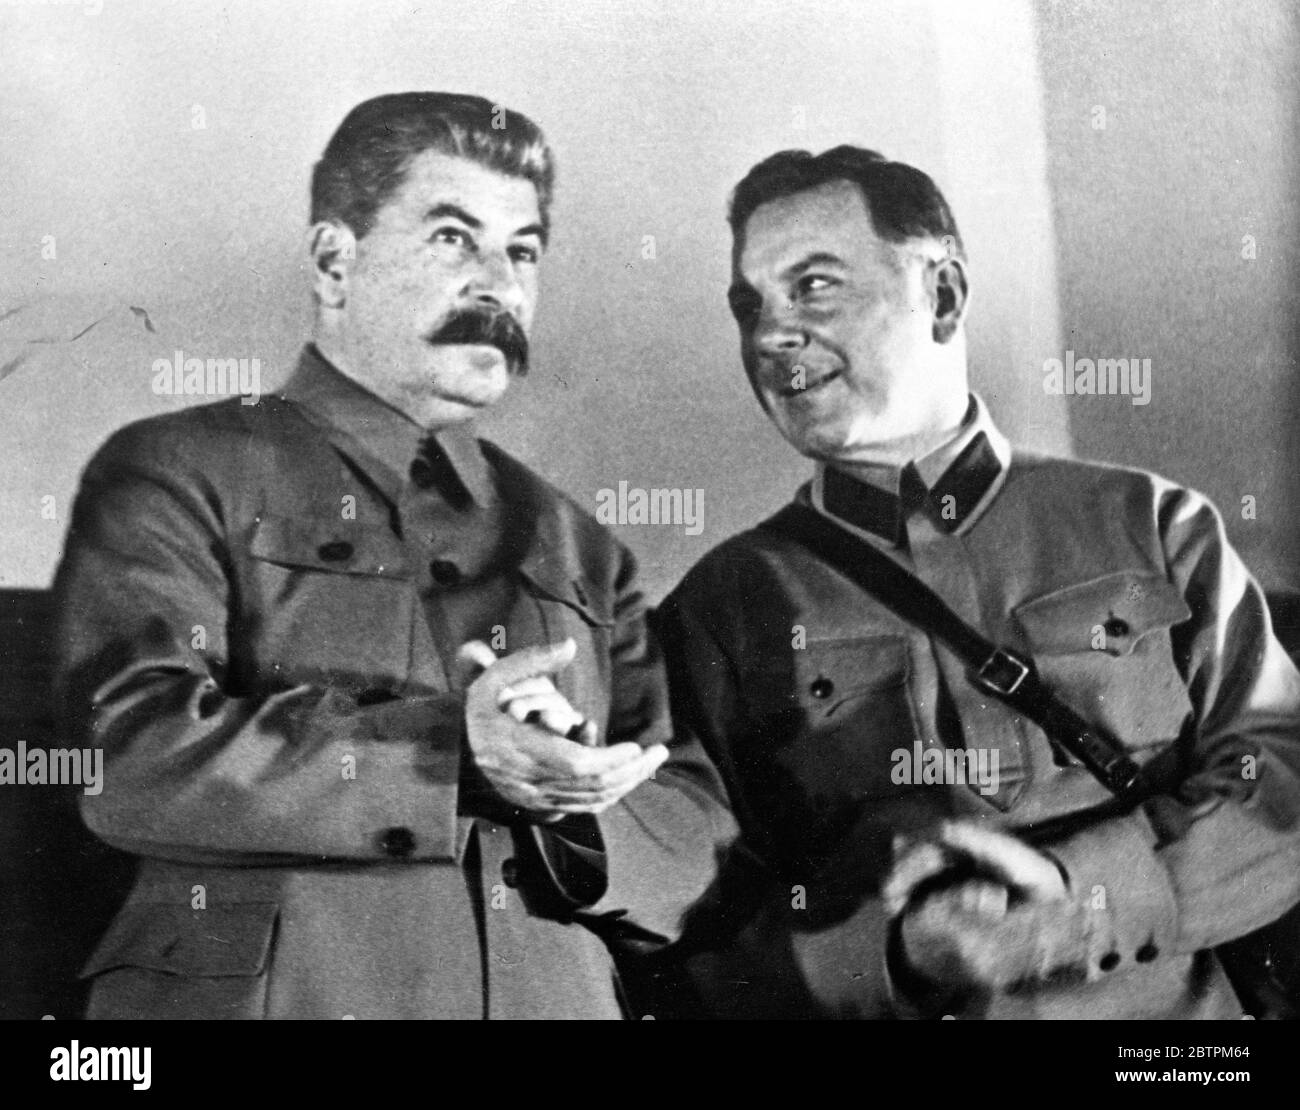 Stalin blickt nach vorne. Joseph Stalin, der sowjetische Diktator, fixiert seinen Blick nach vorne und klappt abwesend als lächelnd K E Woroshilow, Verteidigungskommissar. Macht einen Kommentar auf einer Arbeiterkonferenz im Kreml, Moskau statt. 28. November 1935 Stockfoto